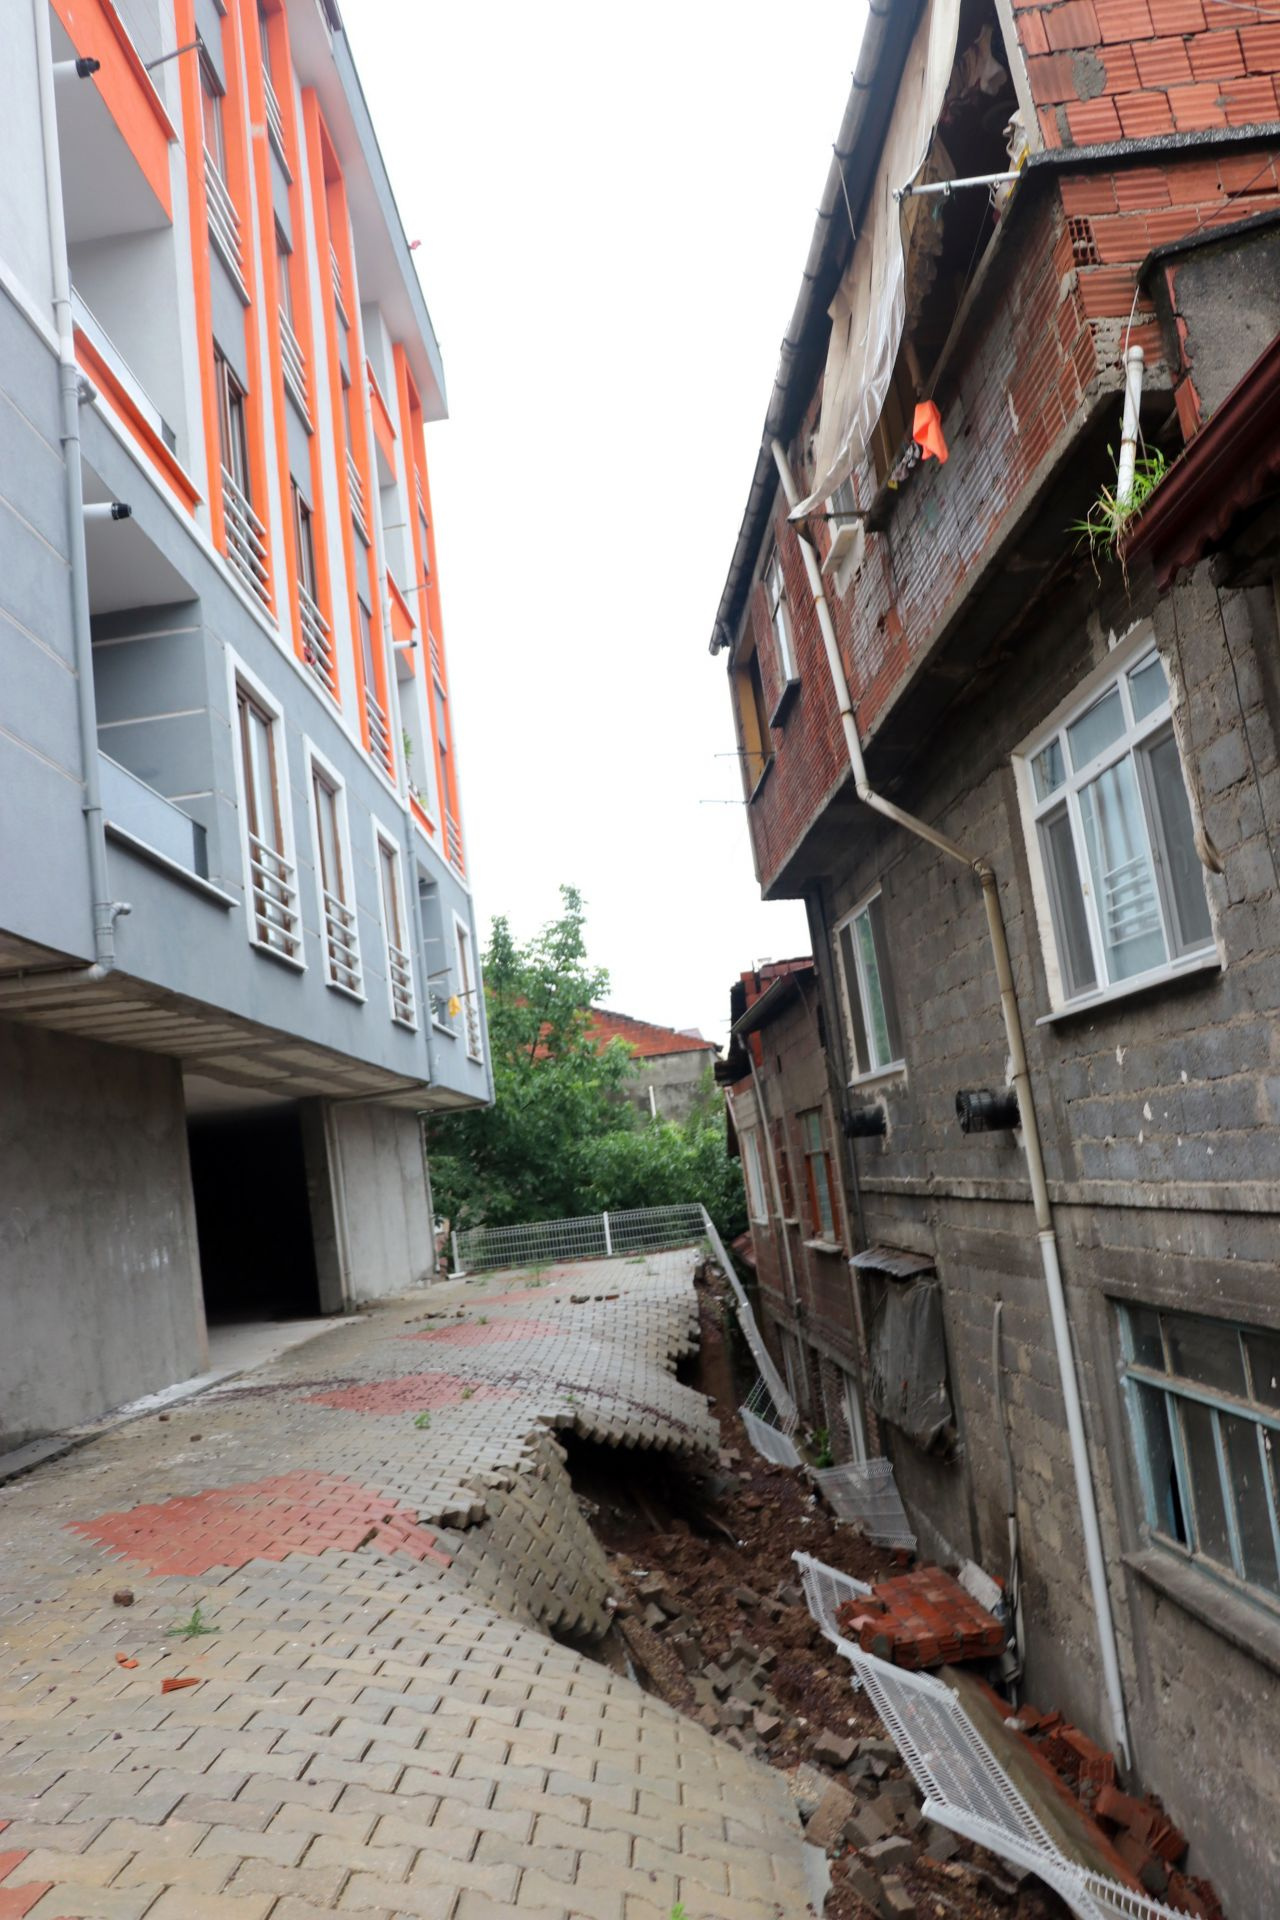 Kocaeli'de aşırı yağmurdan istinad duvarı çöktü, 25 hane boşaltıldı